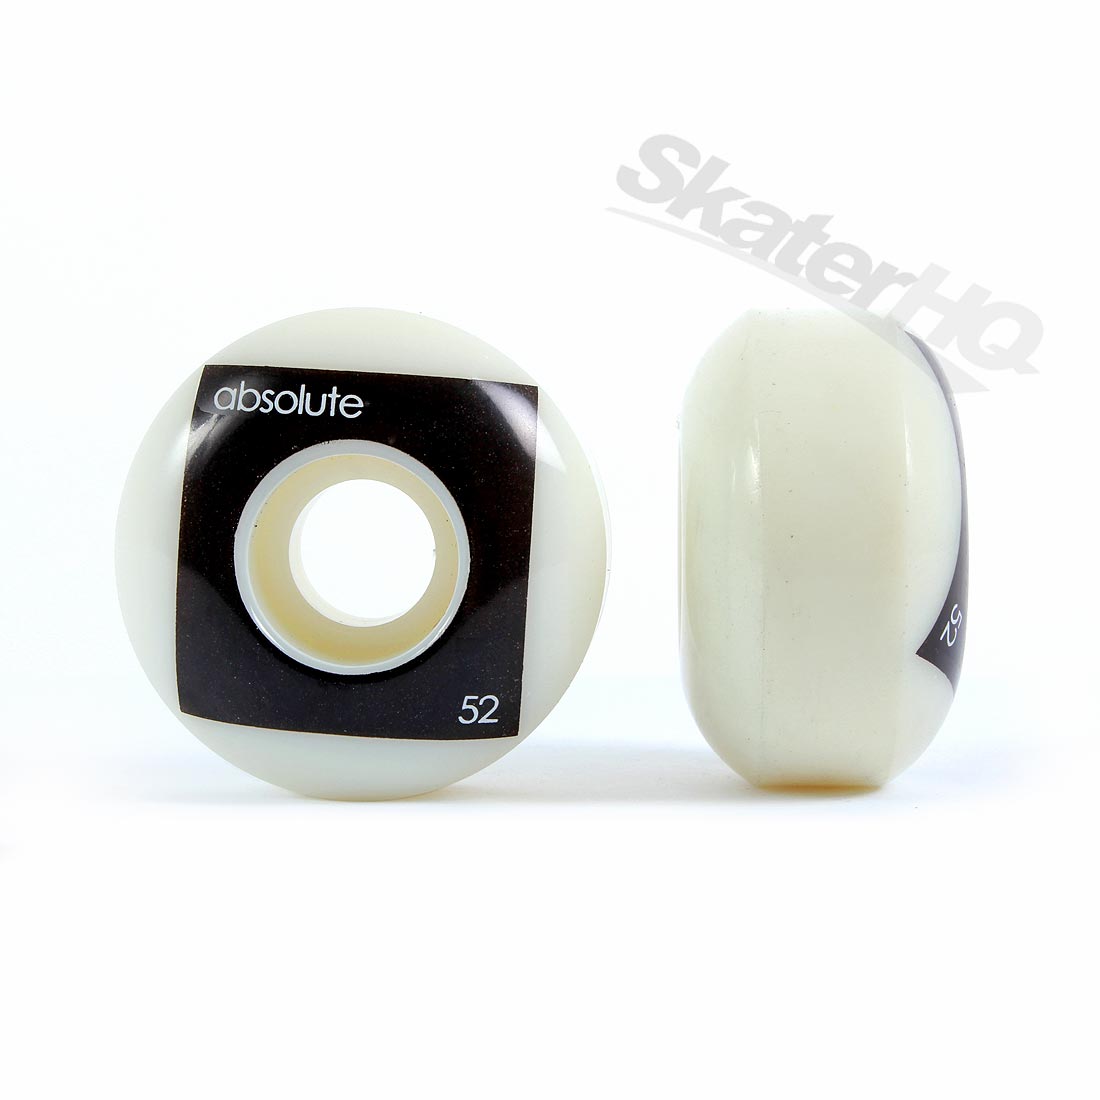 Absolute Blank Wheel 52mm - 4pk Skateboard Wheels